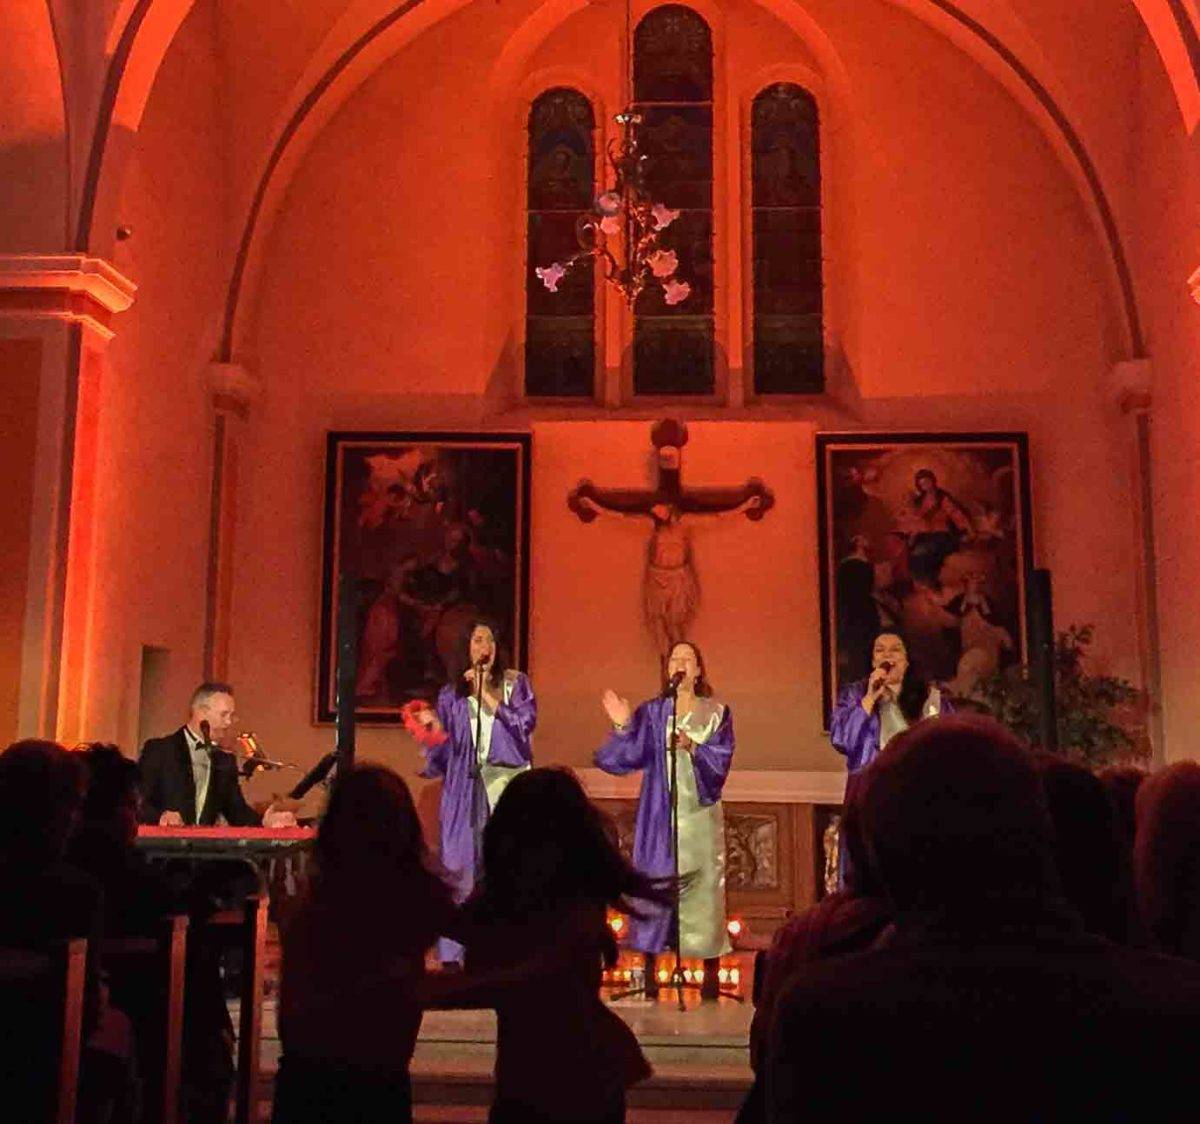 Soirée concert Gospel, à l' Eglise de Saint-Pierre-en-Faucigny, en Haute-Savoie, avec david bonnin pianiste